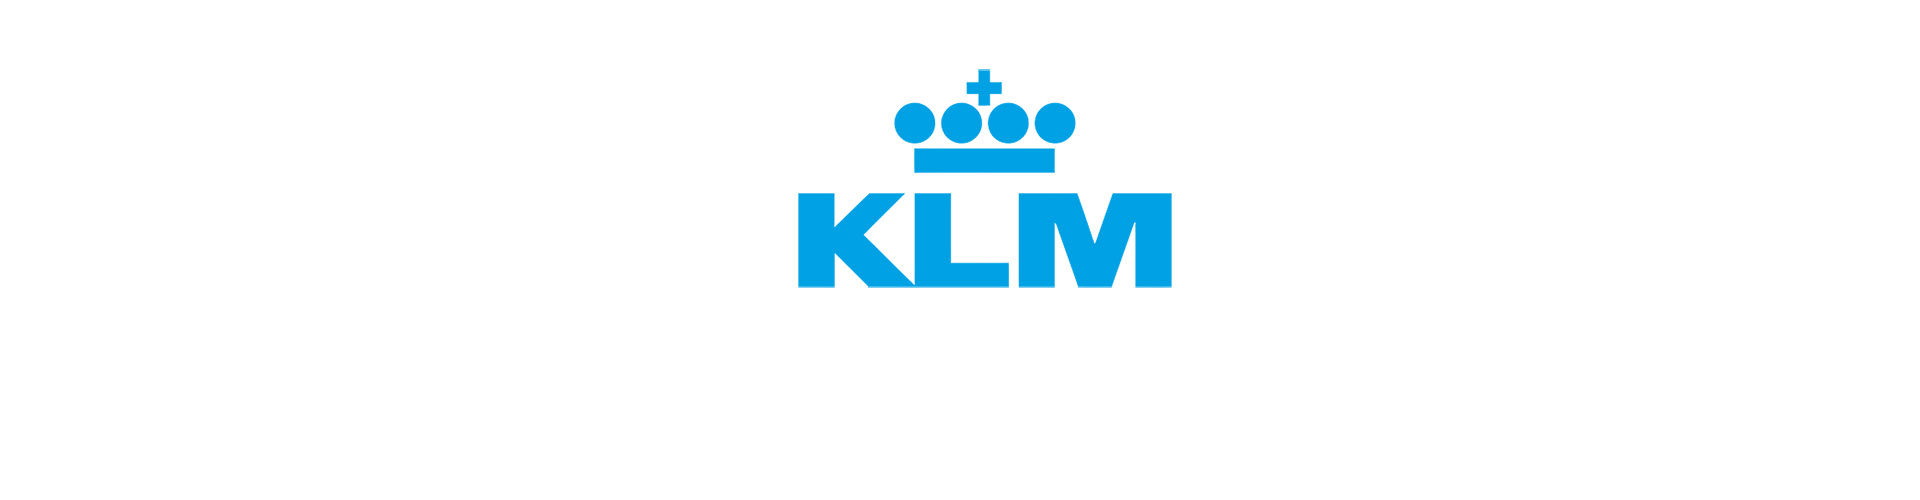 KLMオランダ航空画像2